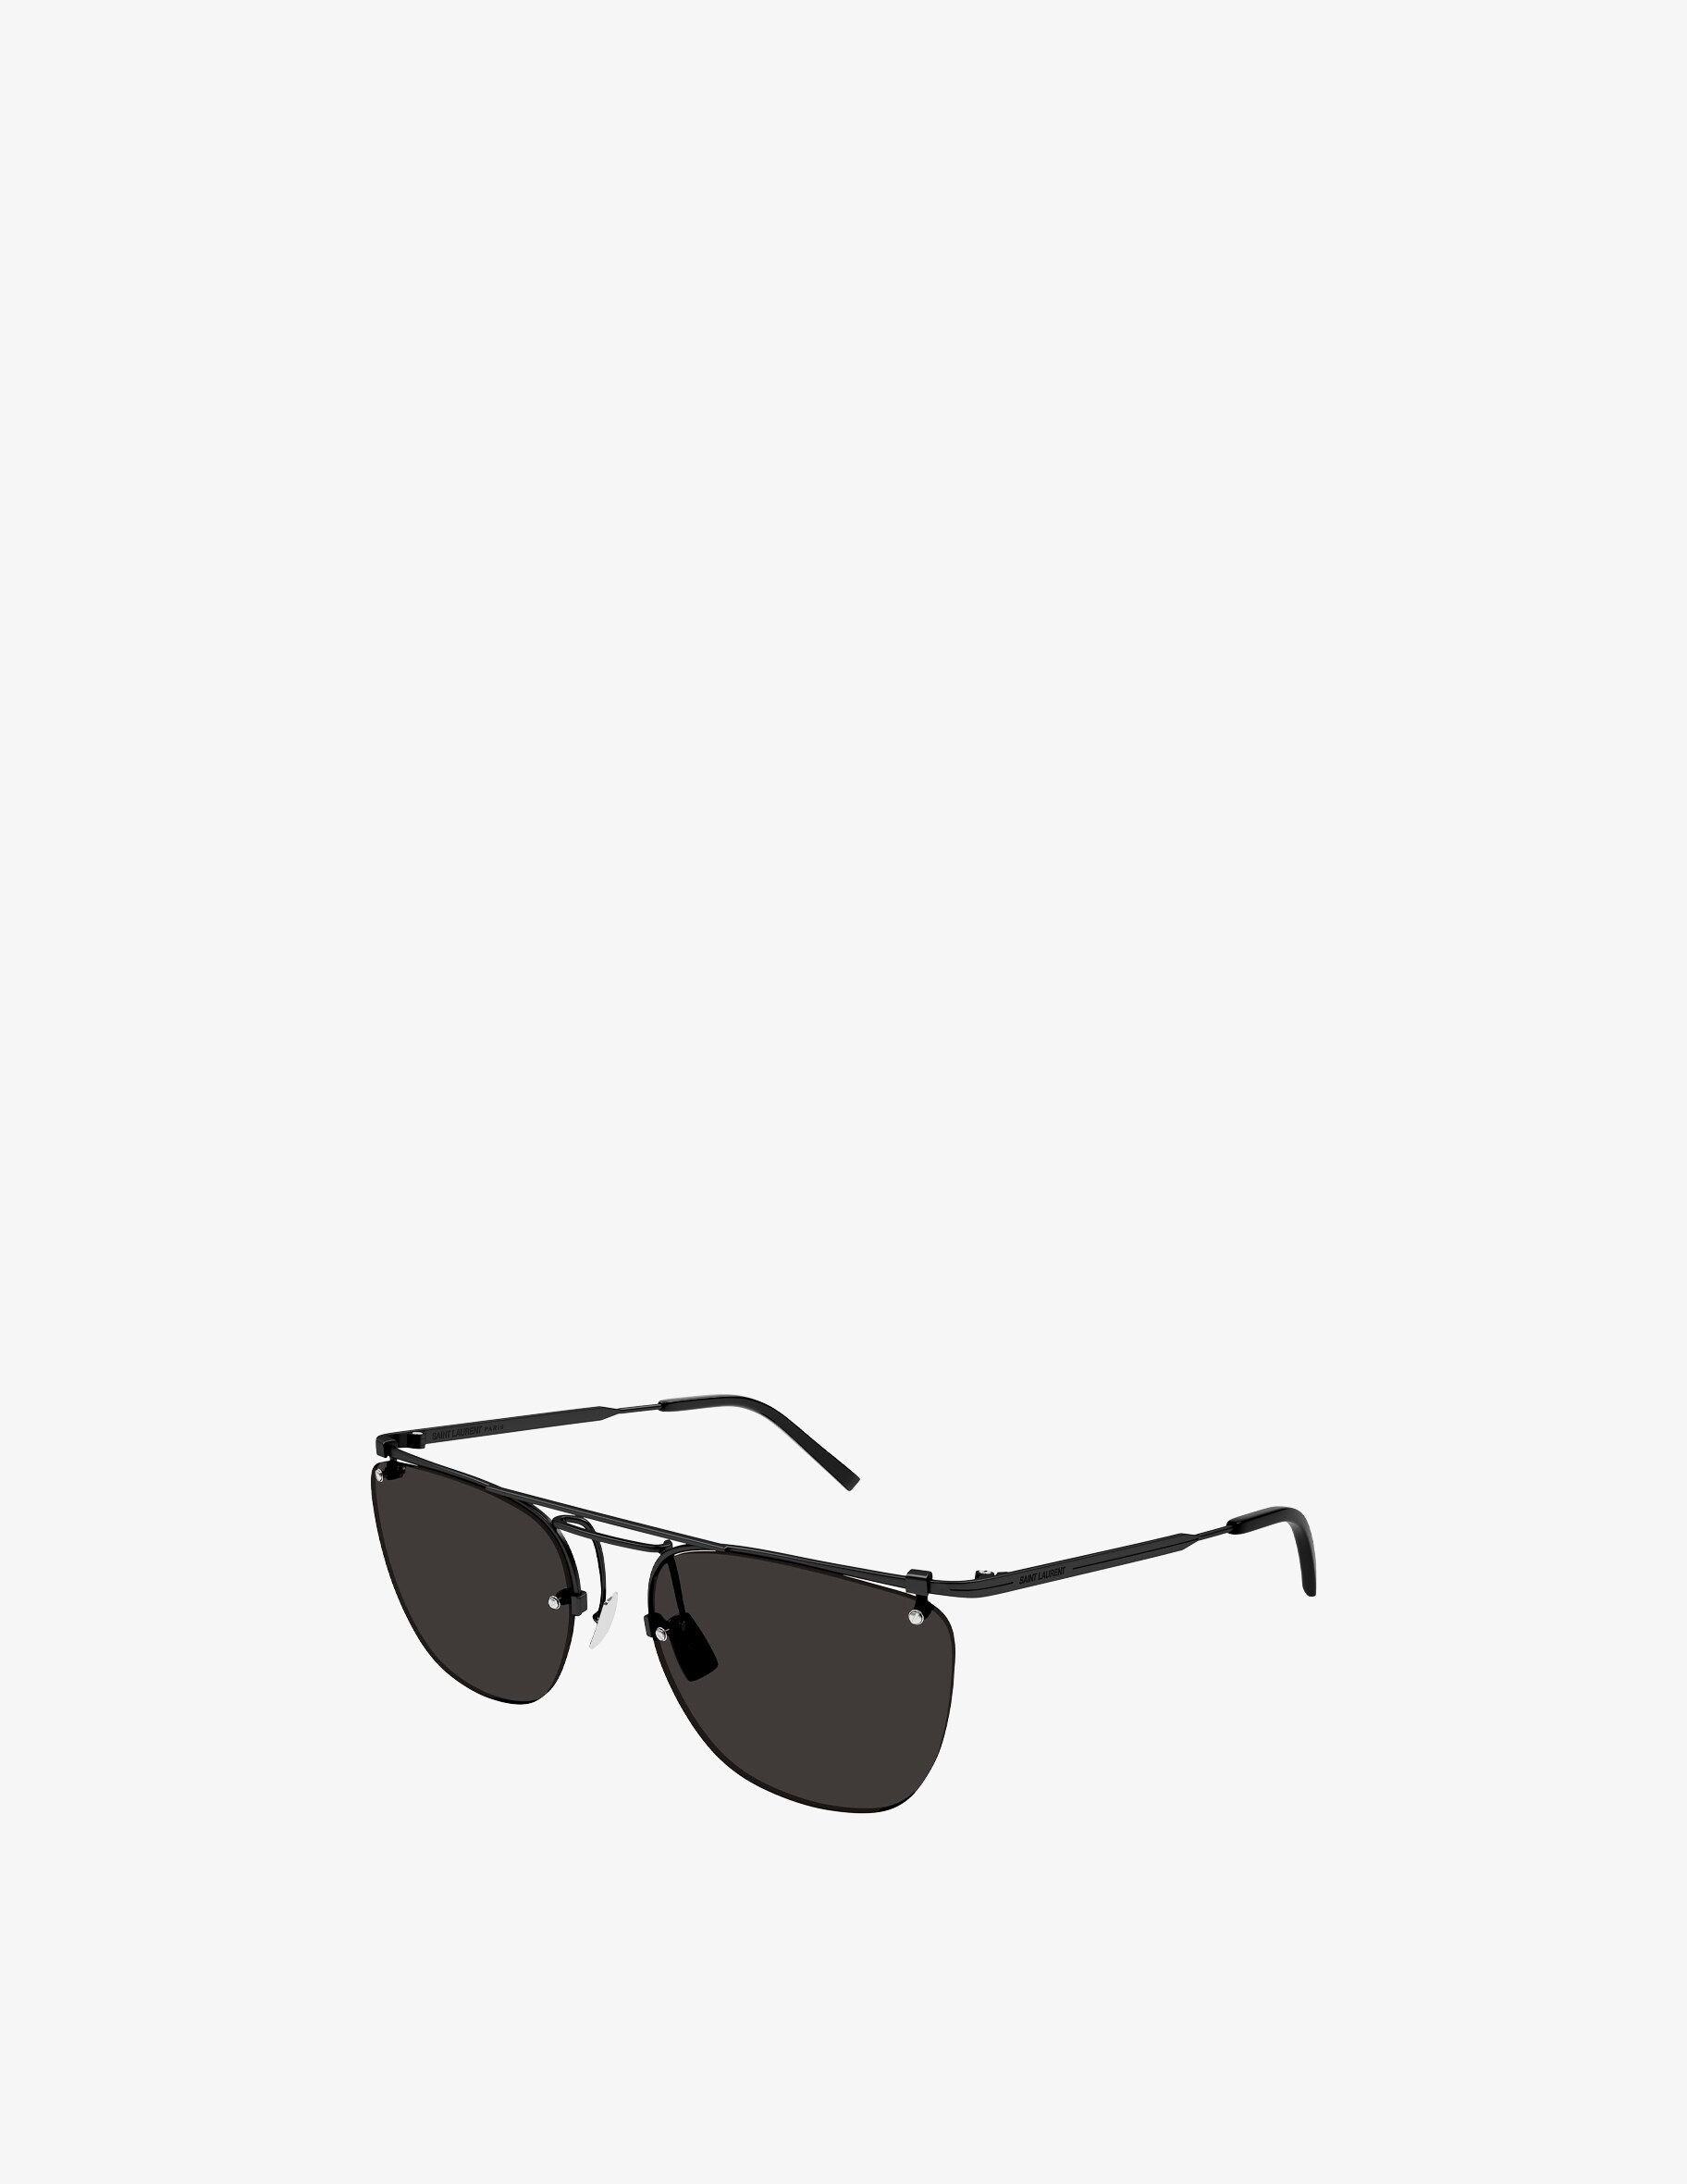 Солнцезащитные очки-авиаторы SL 600 Saint Laurent, цвет Nero